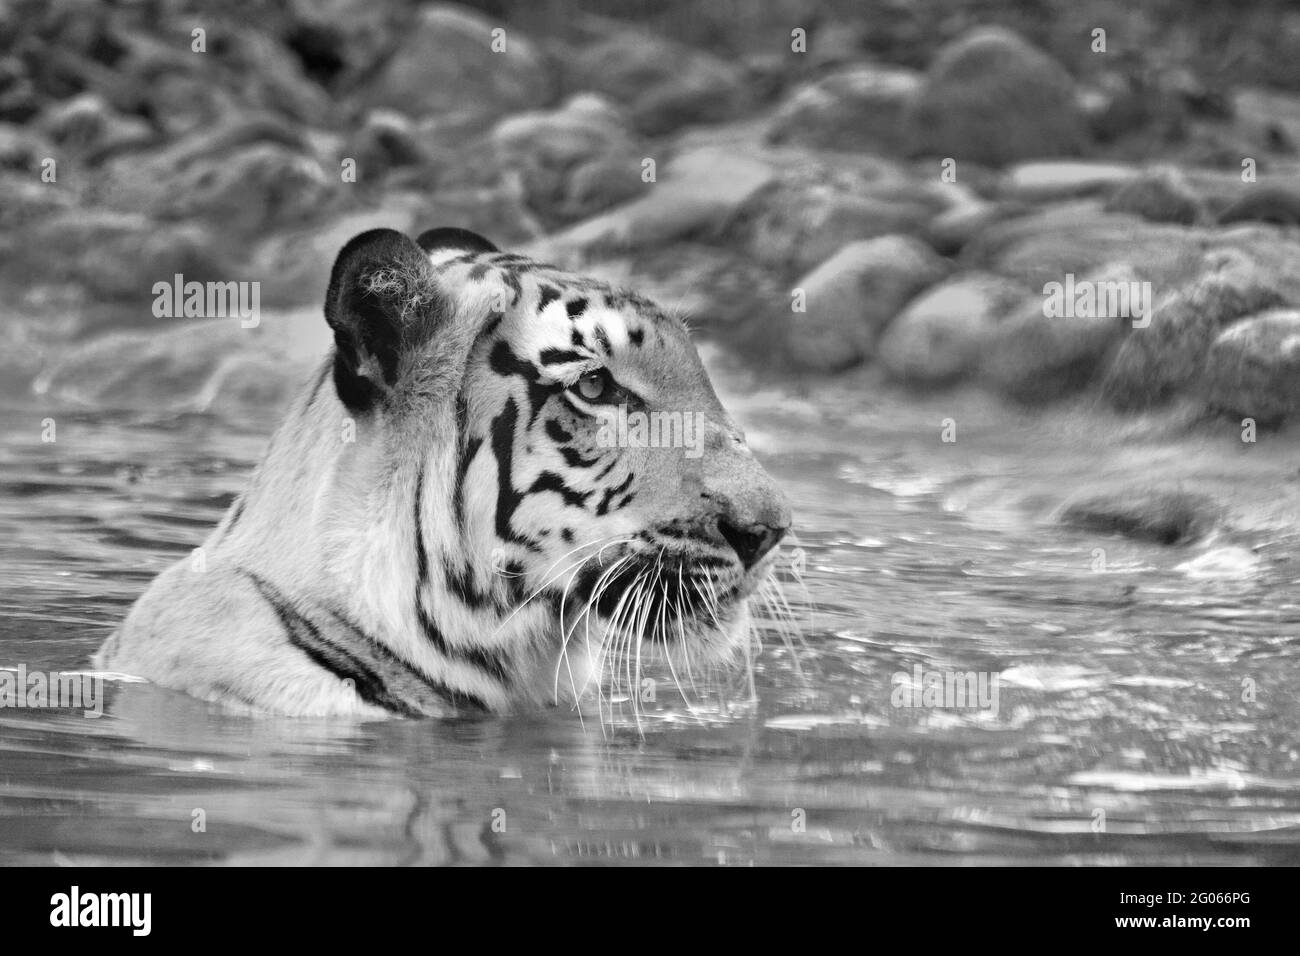 Schöne Royal Bengal Tiger, Panthera Tigris, Baden im Wasser. Es ist größte Katzenart und gefährdet, nur in Sundarban Mangrovenwald gefunden. Stockfoto